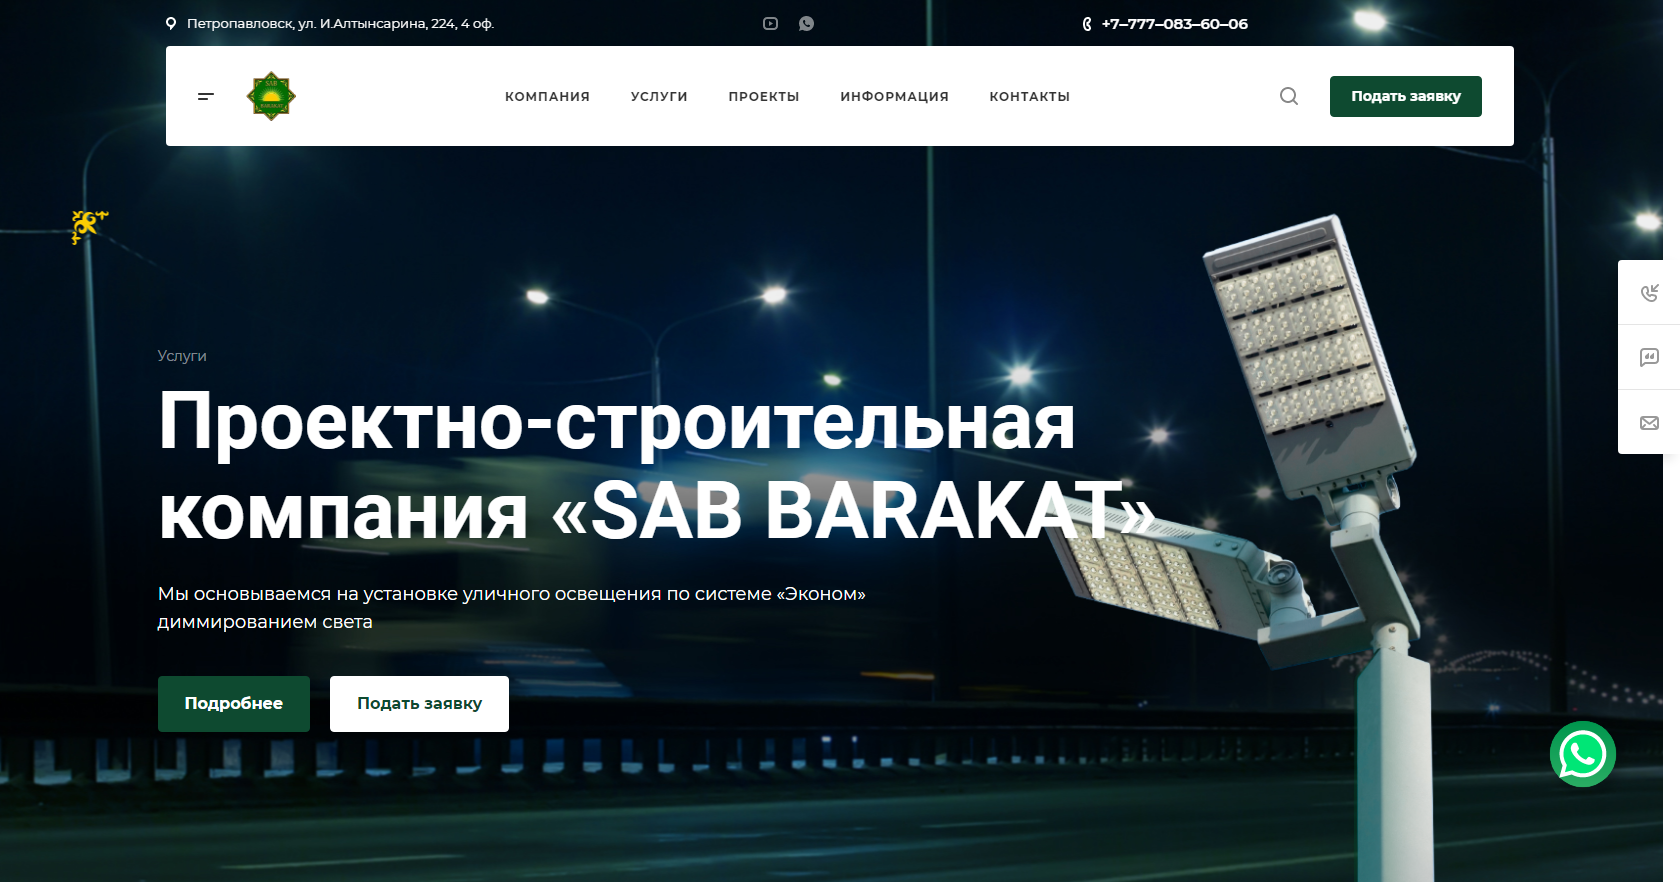 проектно-строительная компания  «sab barakat»